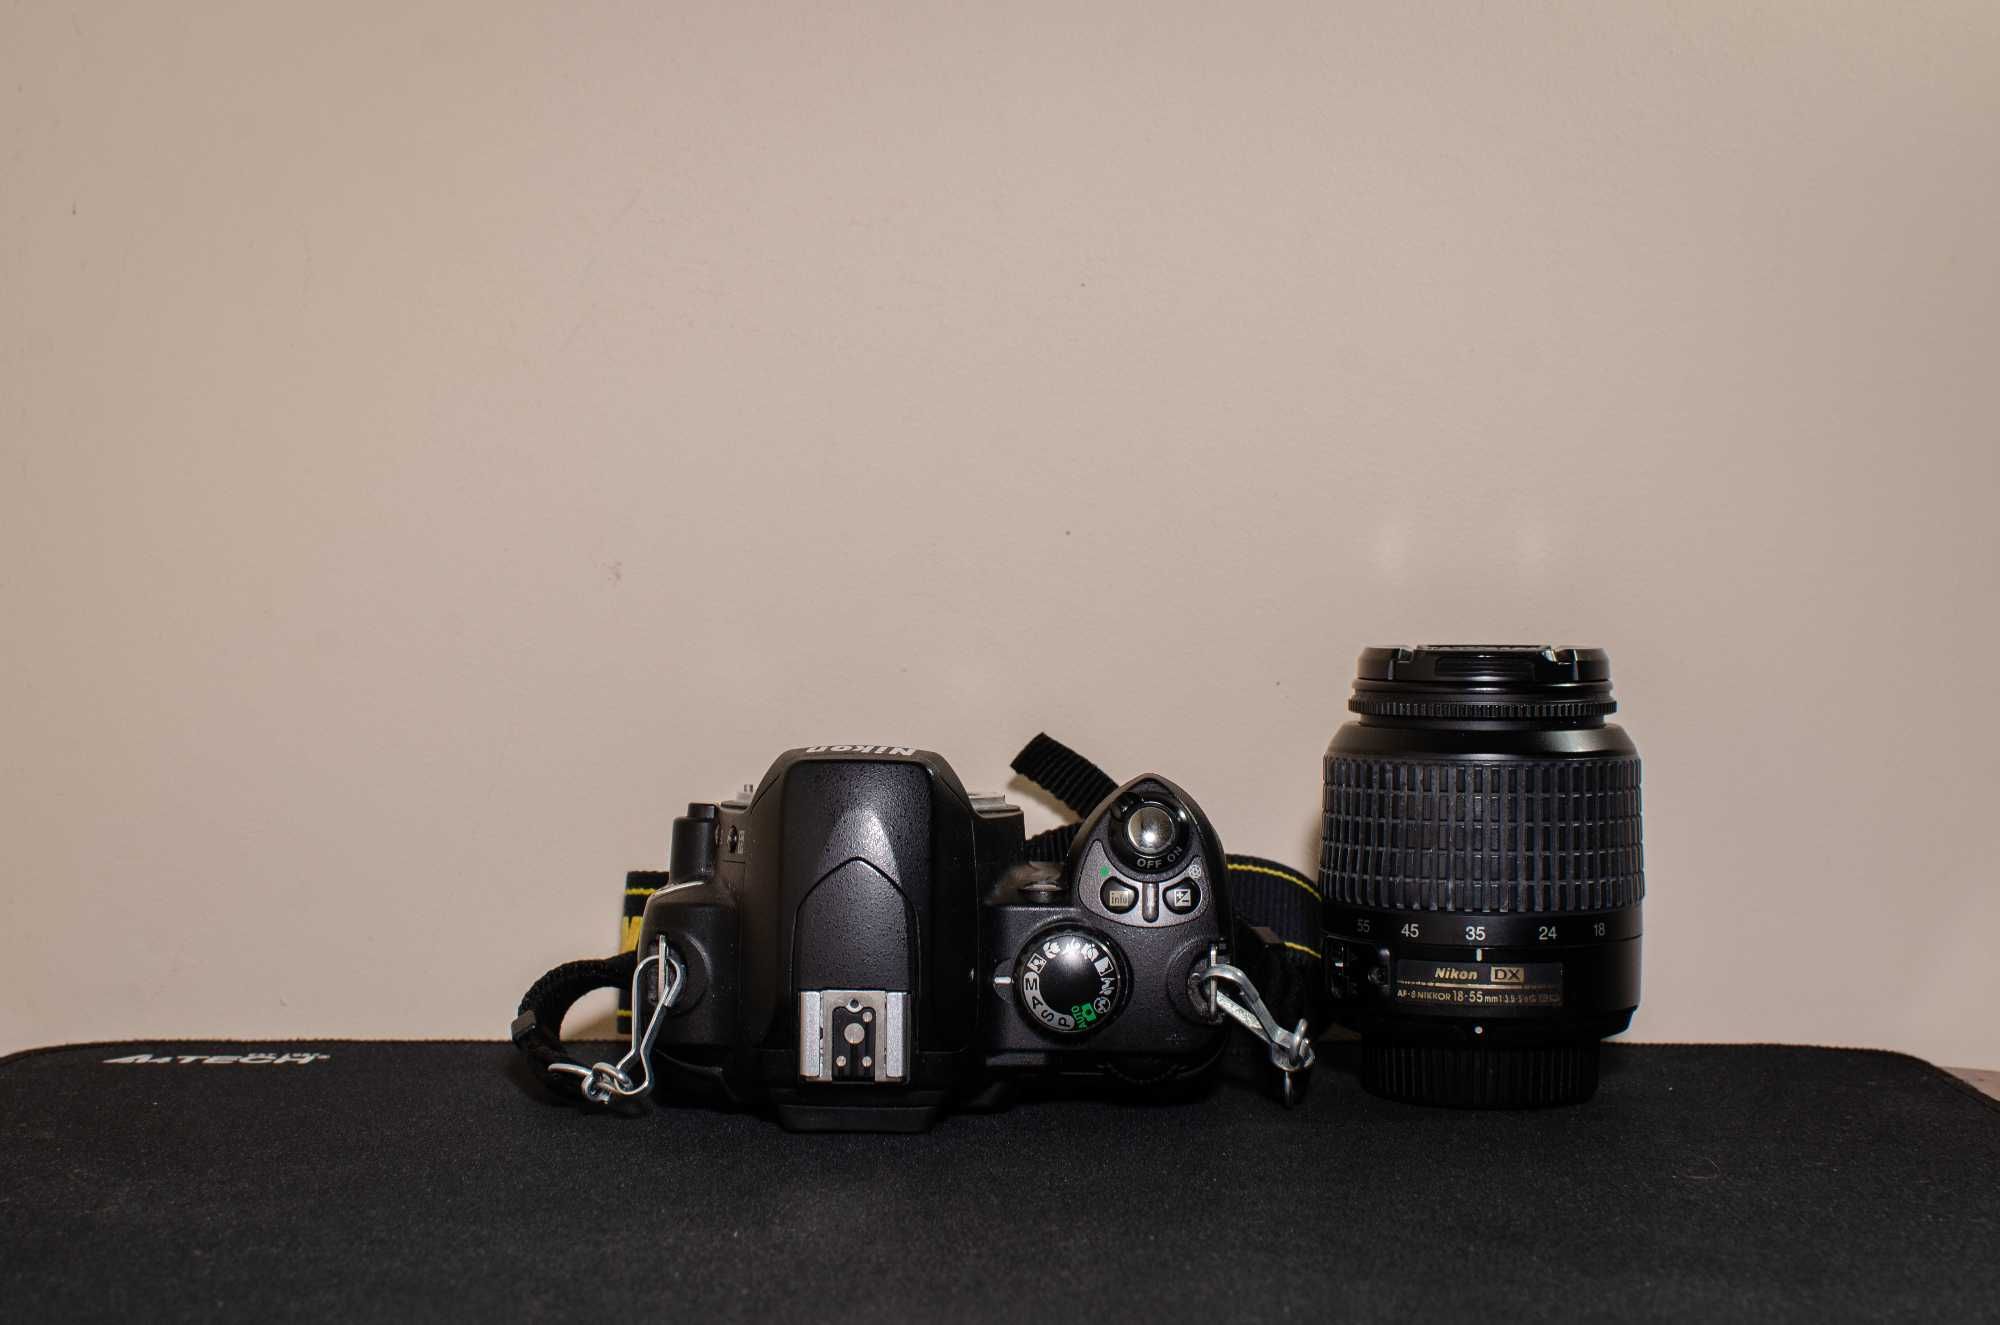 Nikon D40 + Obiektyw Nikkor AF-S 18-55